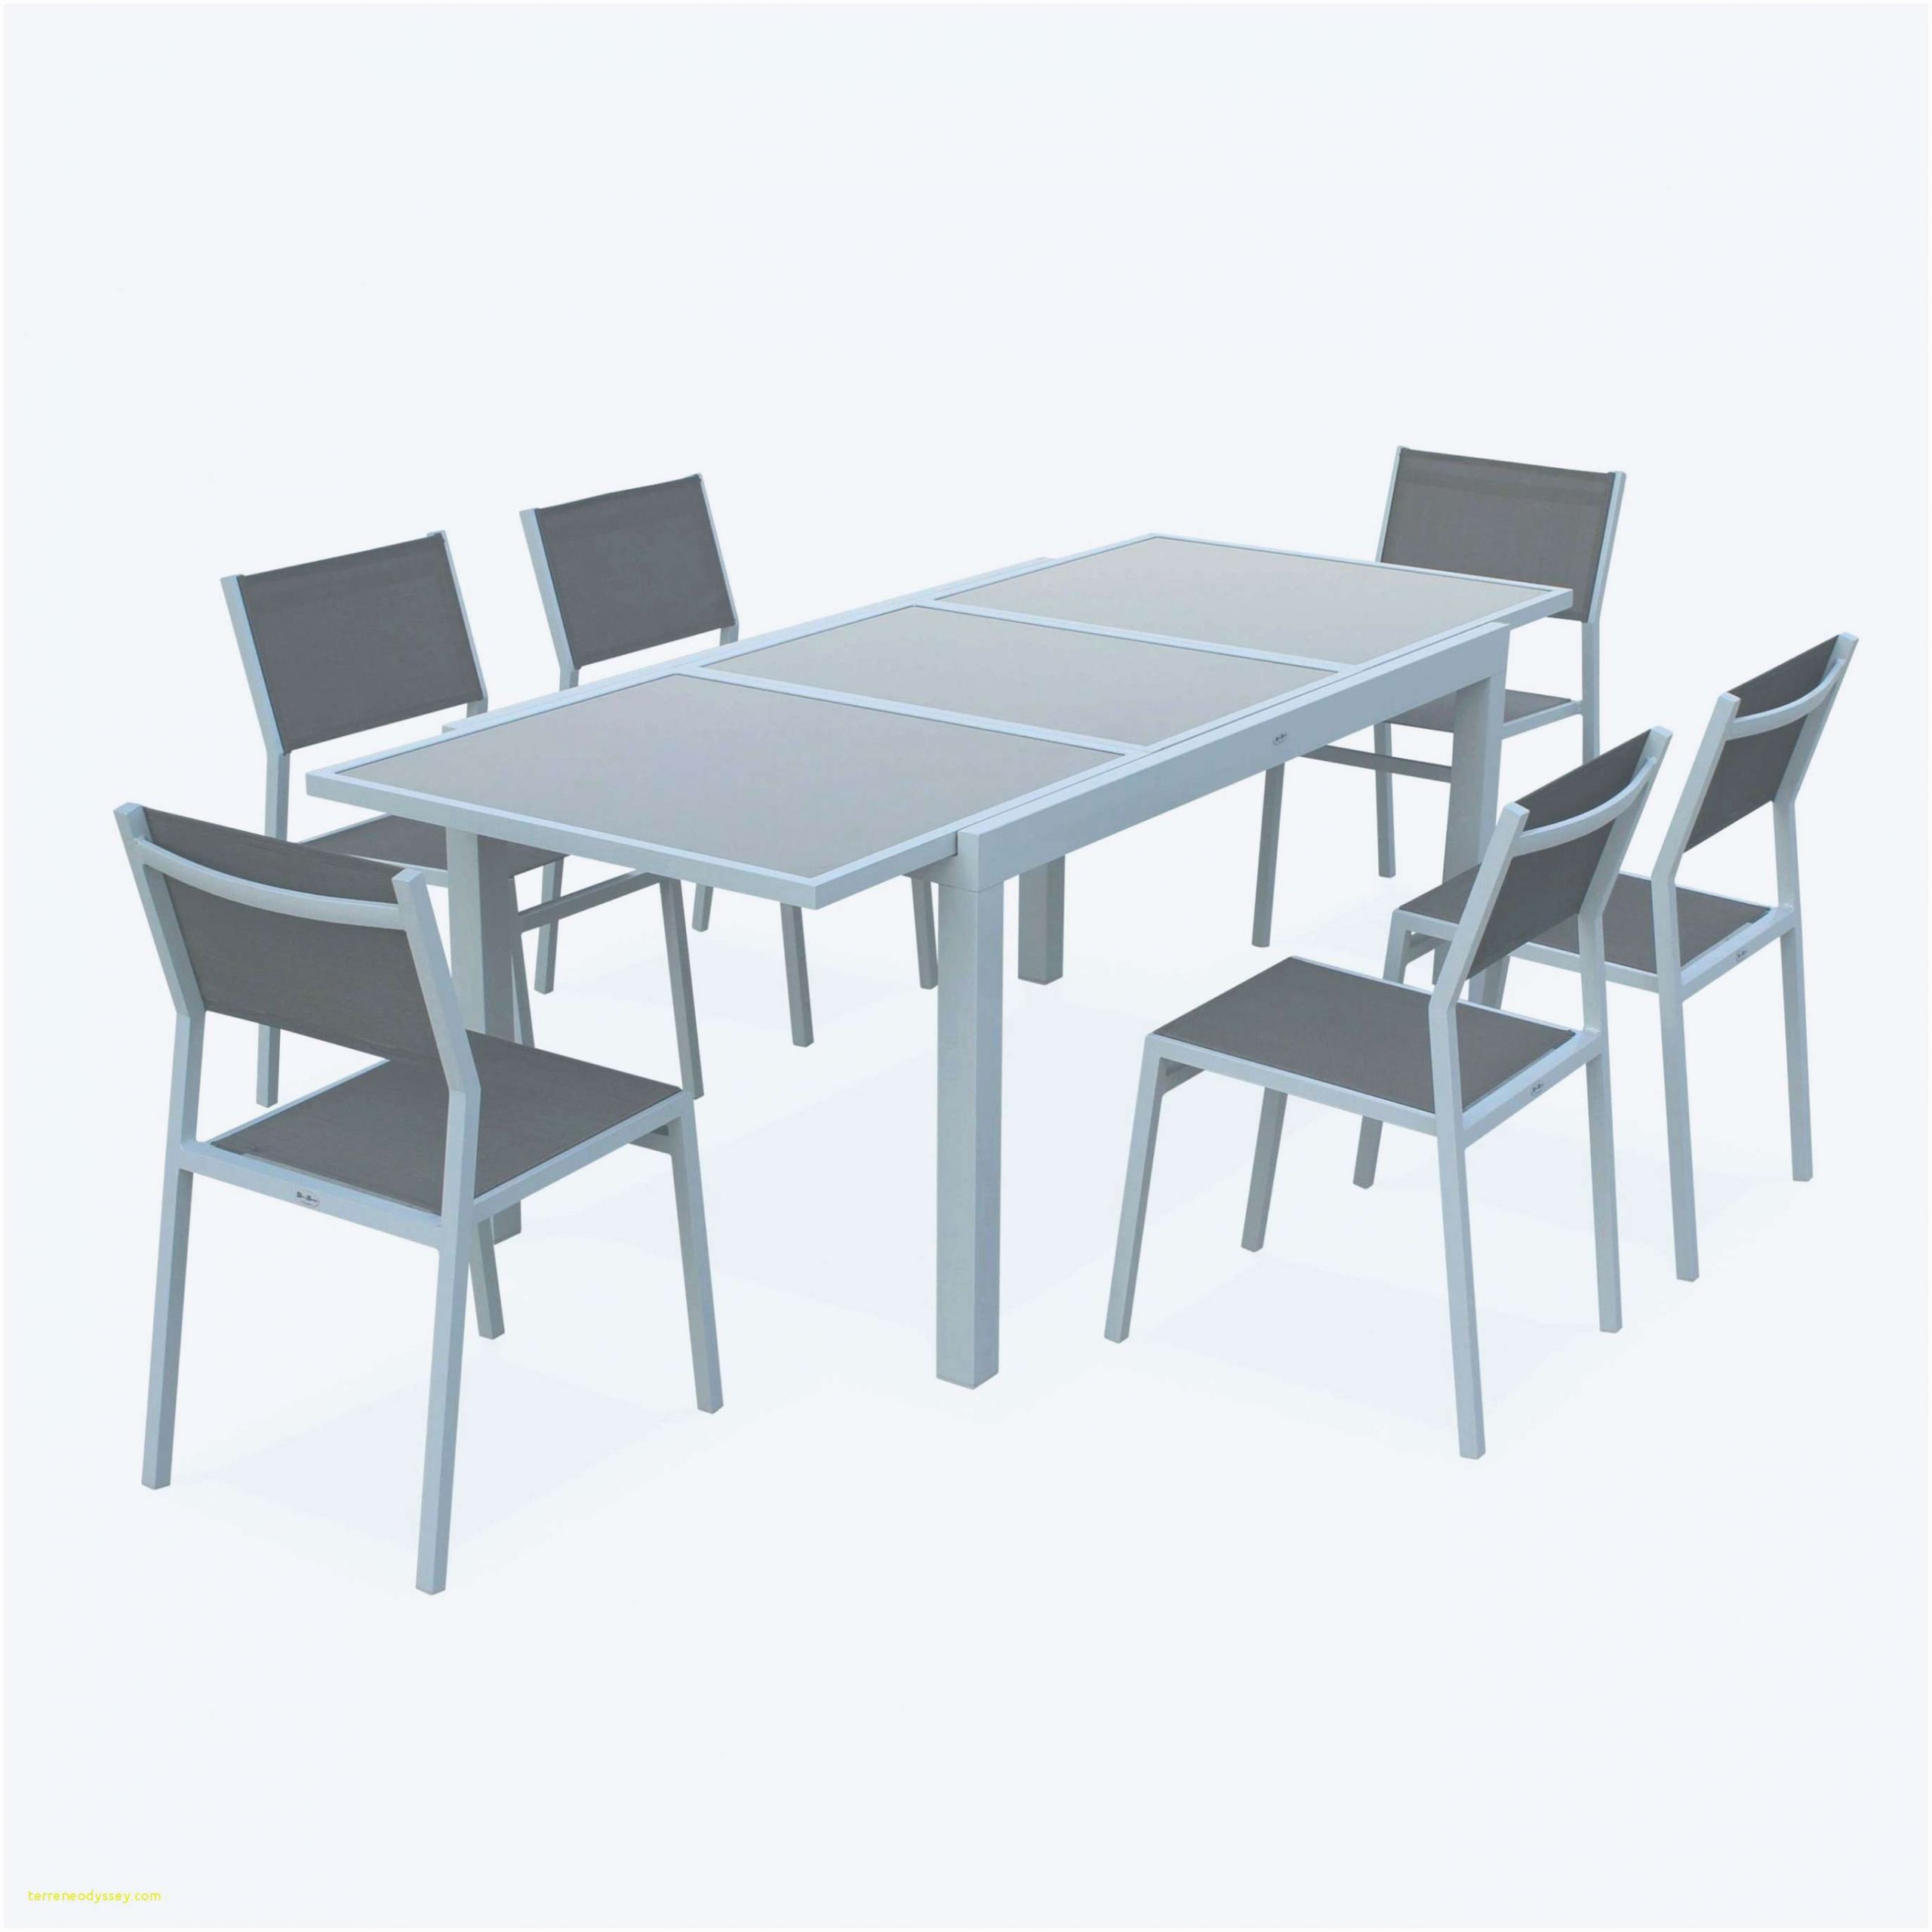 Petite Table Salon De Jardin Beau Design D Intérieur